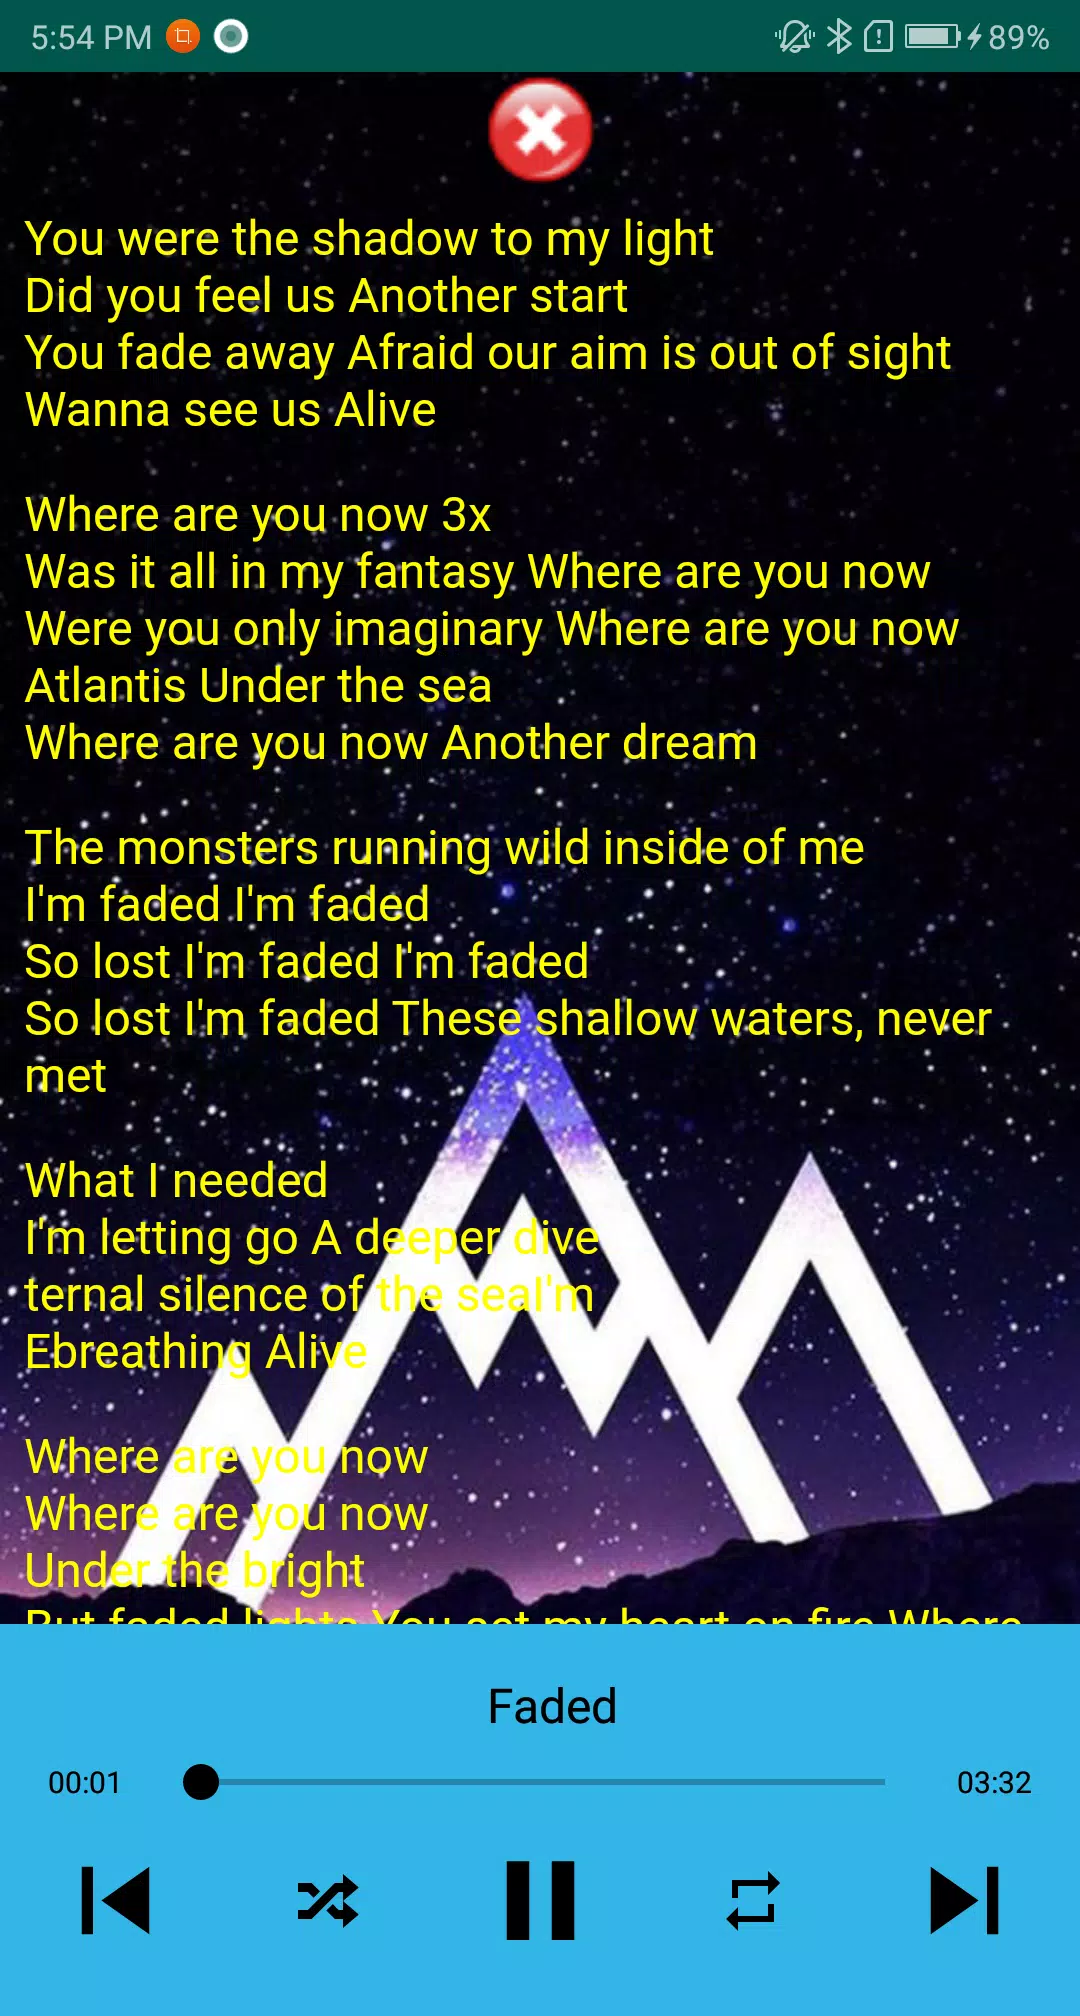 SONG LYRICS - Faded-Alan Walker in 2023  Faded lyrics alan walker, Alan  walker, Faded lyrics